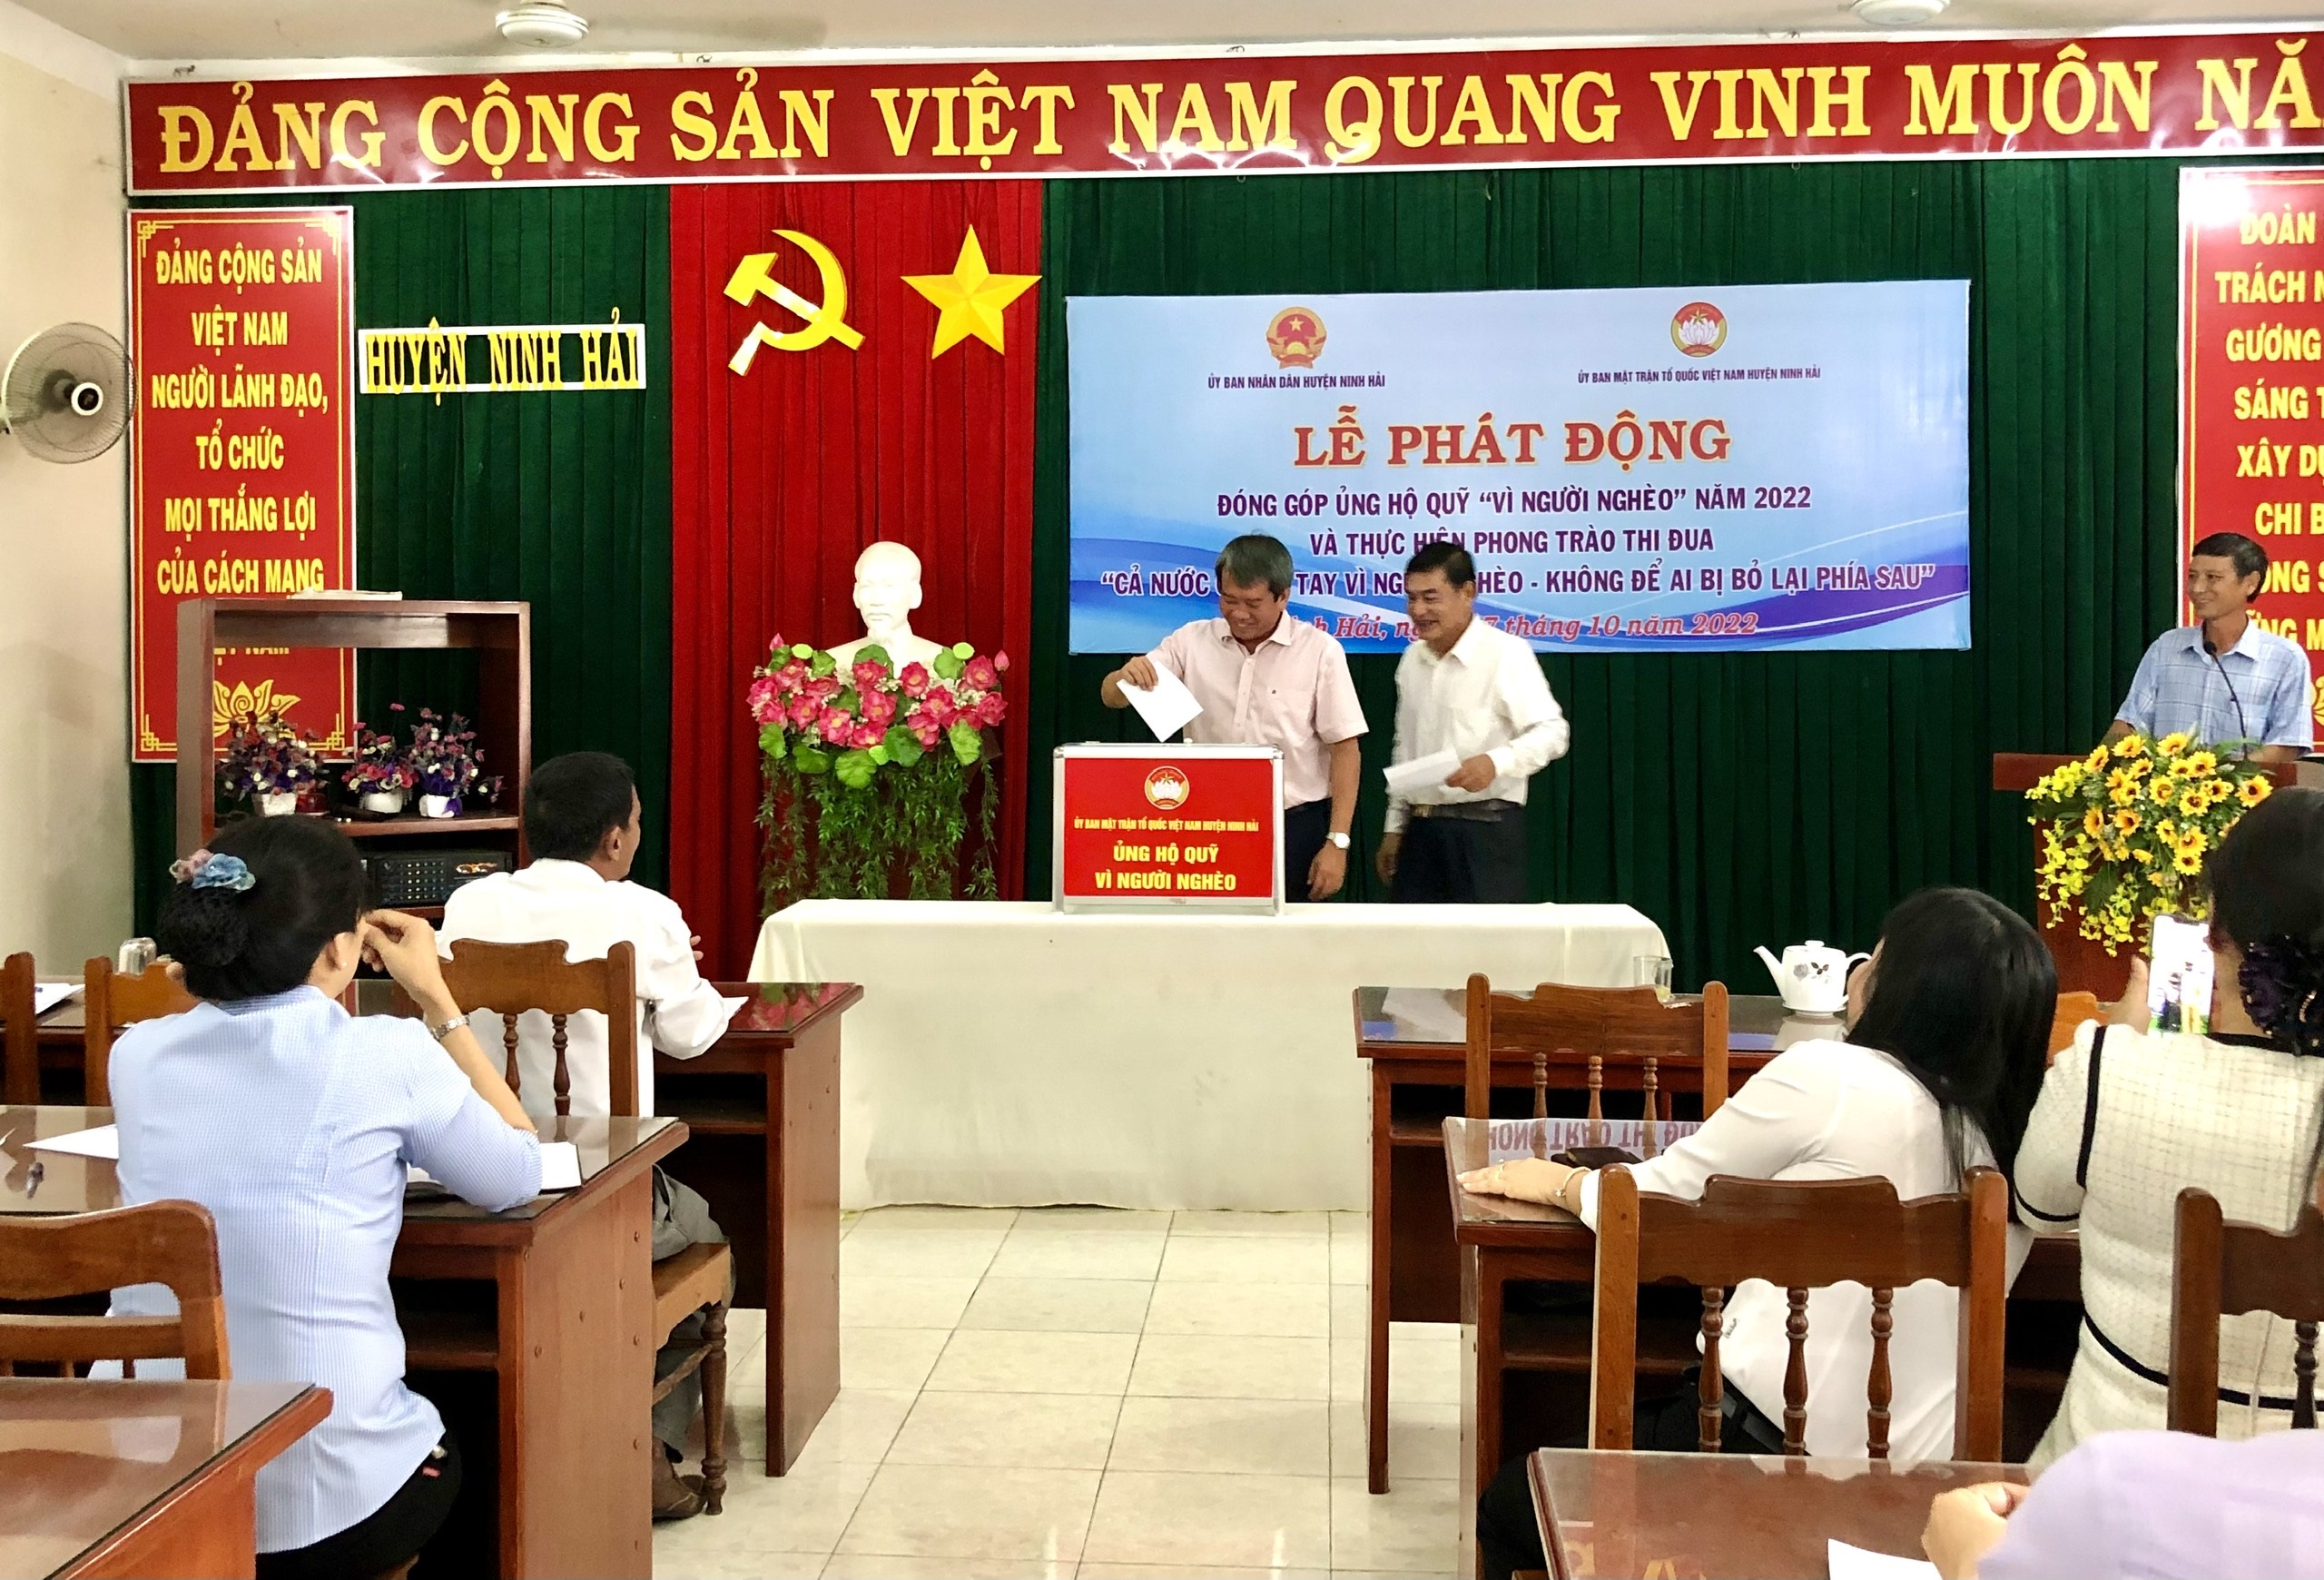 Ủy ban Mặt trận Tổ quốc Việt Nam huyện Ninh Hải phát động quỹ “Vì người nghèo”